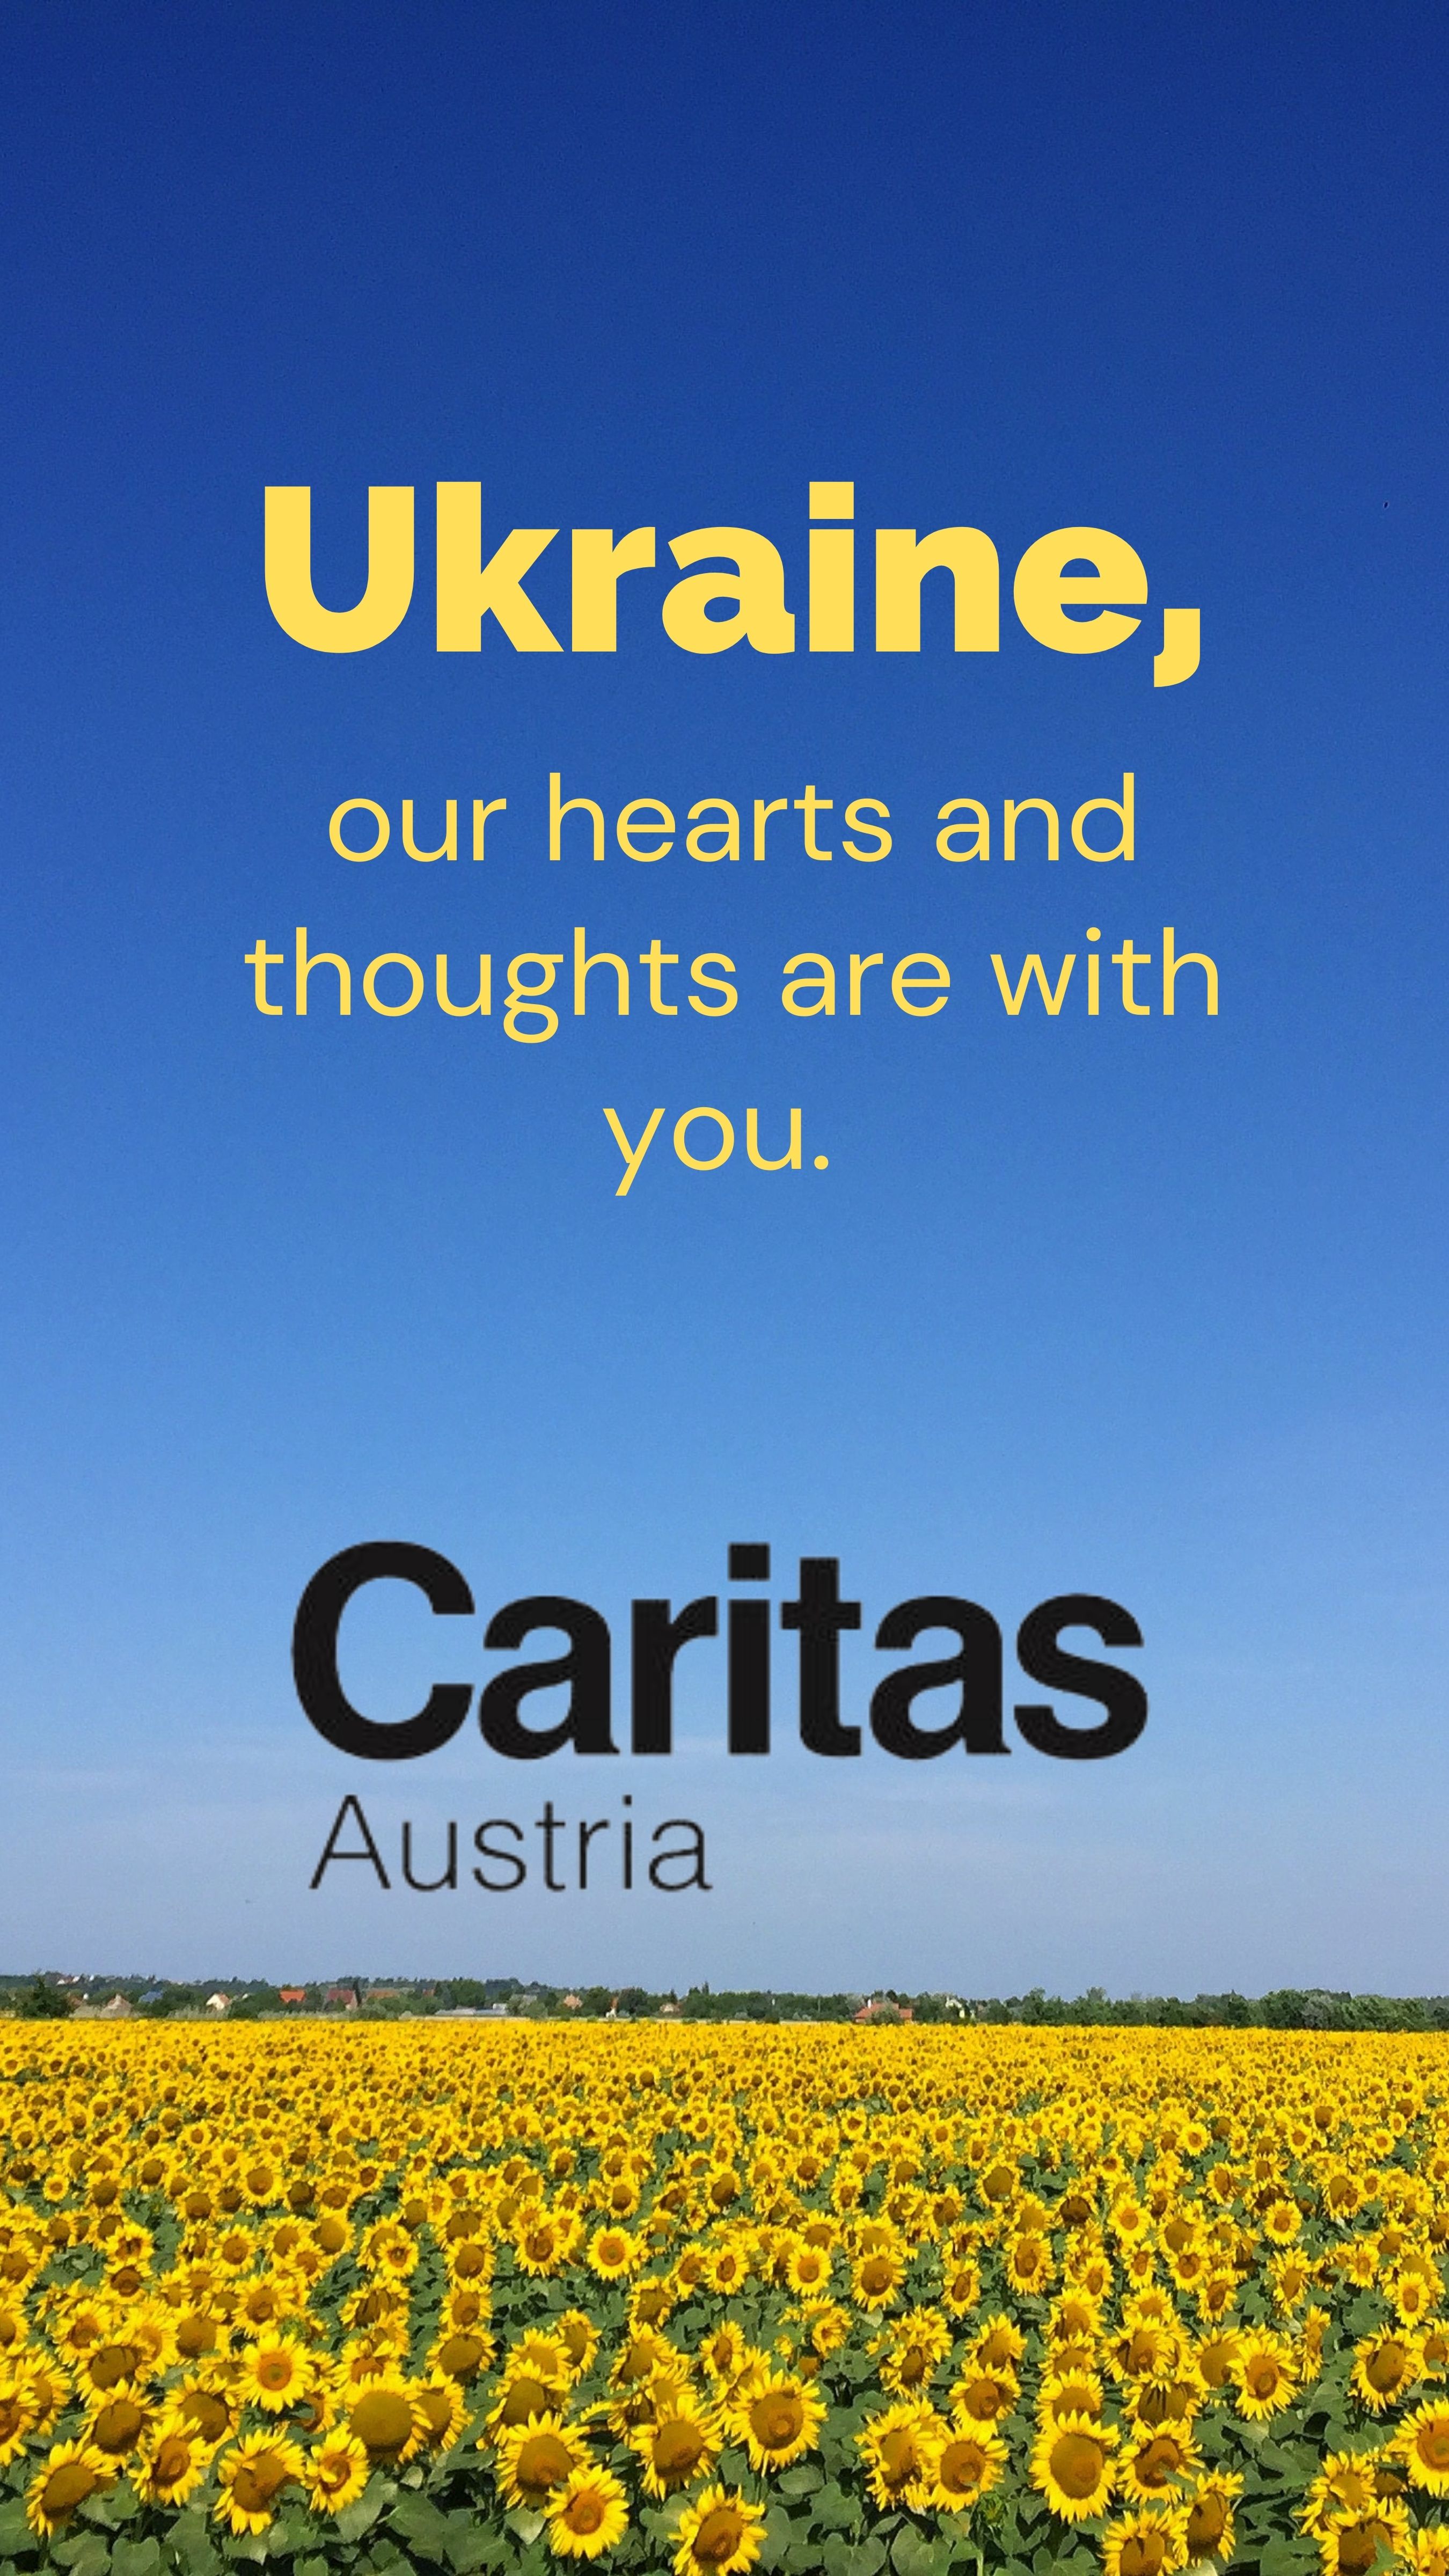 Огромная благодарность Каритас Австрия